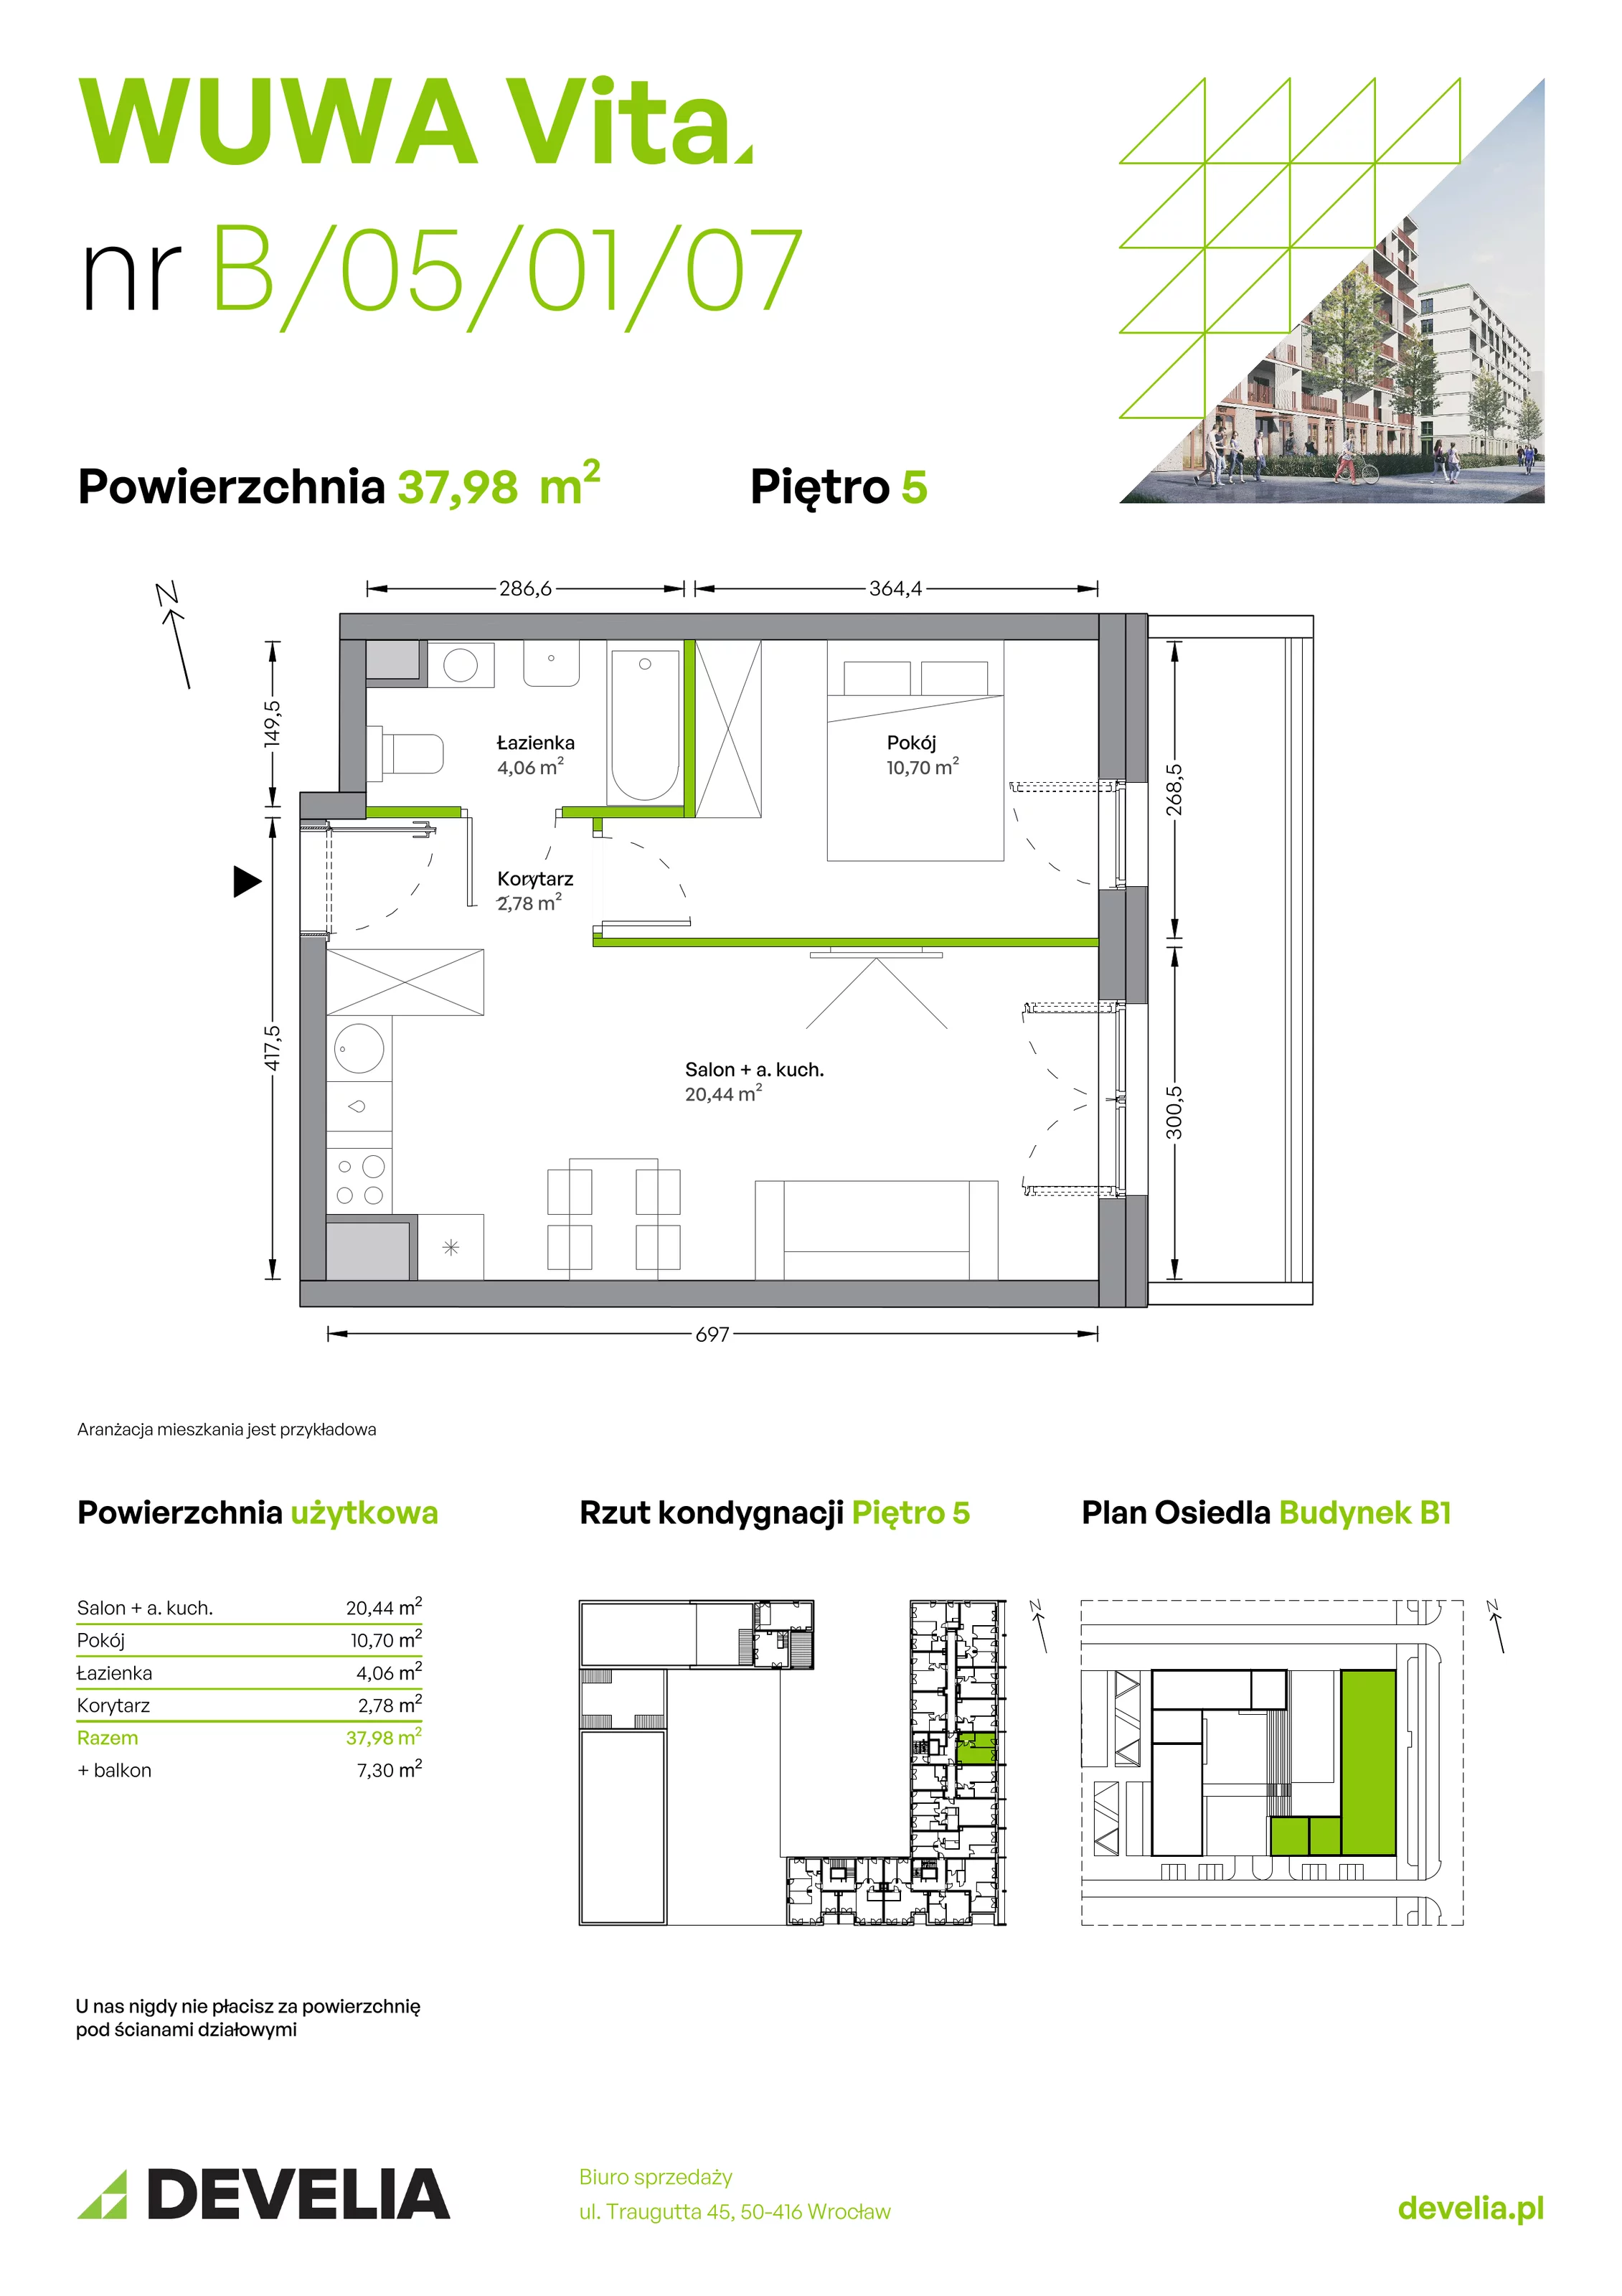 Mieszkanie 37,98 m², piętro 5, oferta nr B.05.01.07, WUWA Vita, Wrocław, Żerniki, Fabryczna, ul. Tadeusza Brzozy